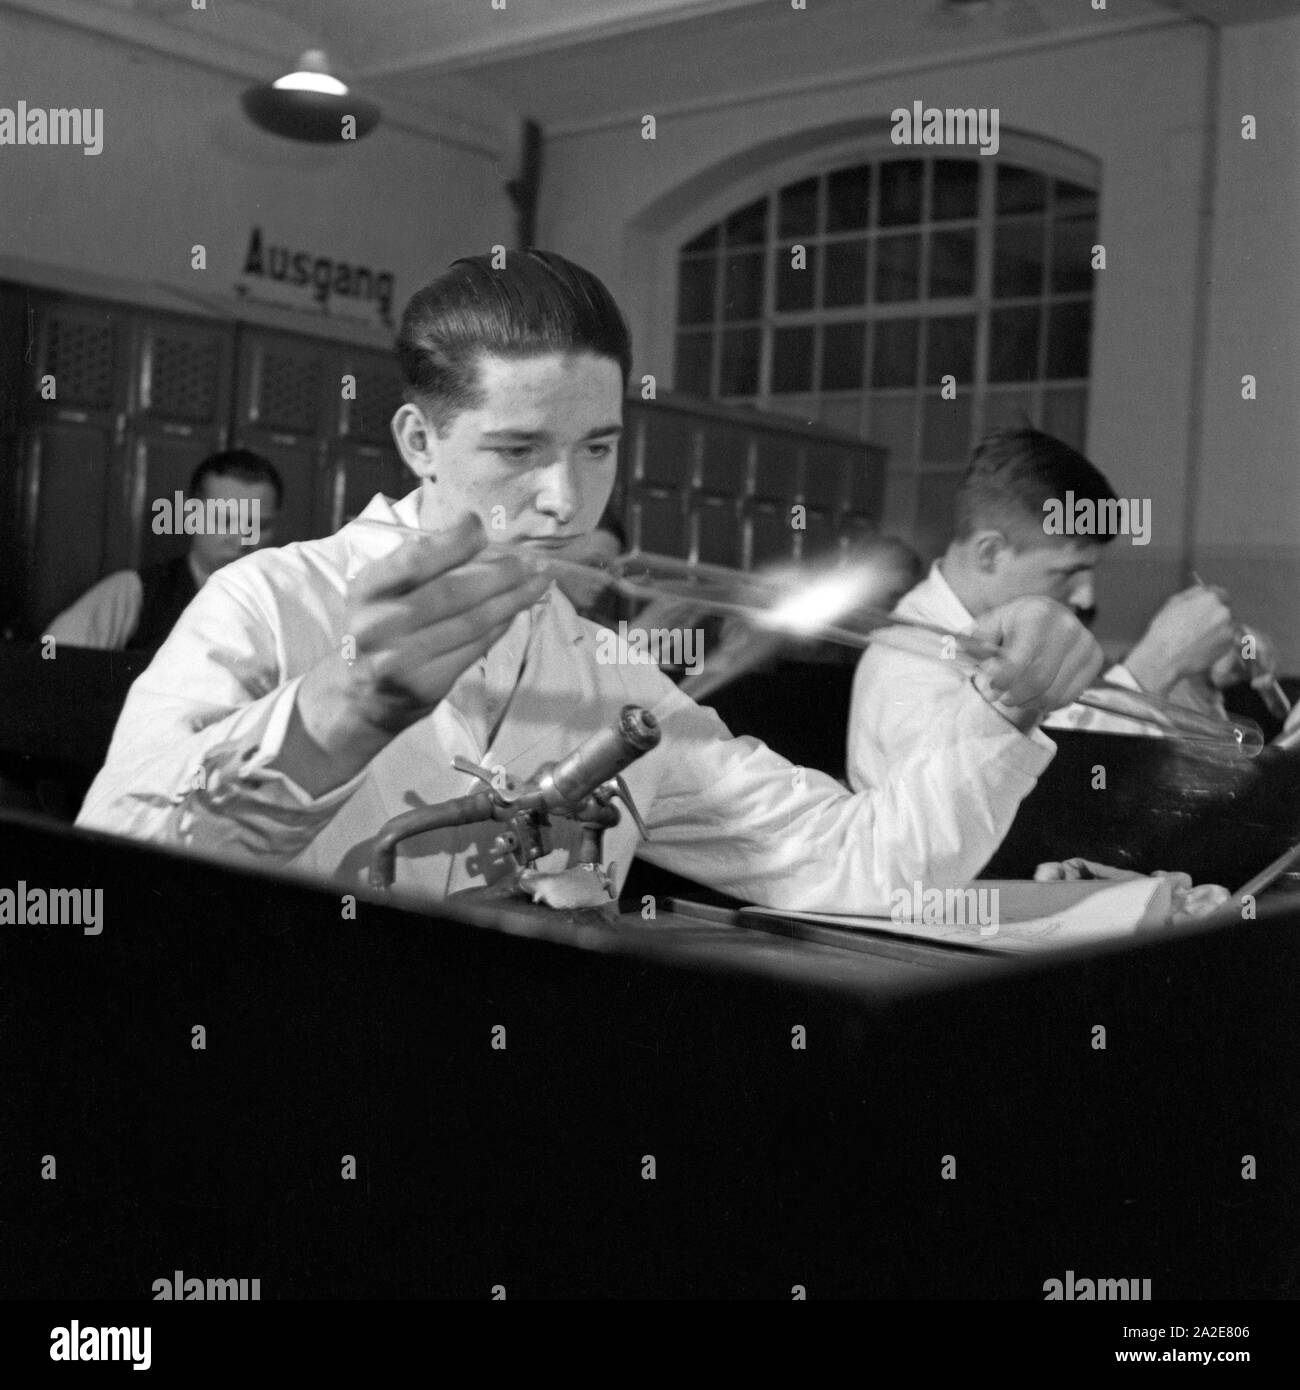 Glasbläser als Teilnehmber beim Reichsberufswettkampf 1937, Deutschland 1930er Jahre. Glassblower as a competitor of the Reichsberufswettkampf contest 1937, Germany 1930s. Stock Photo